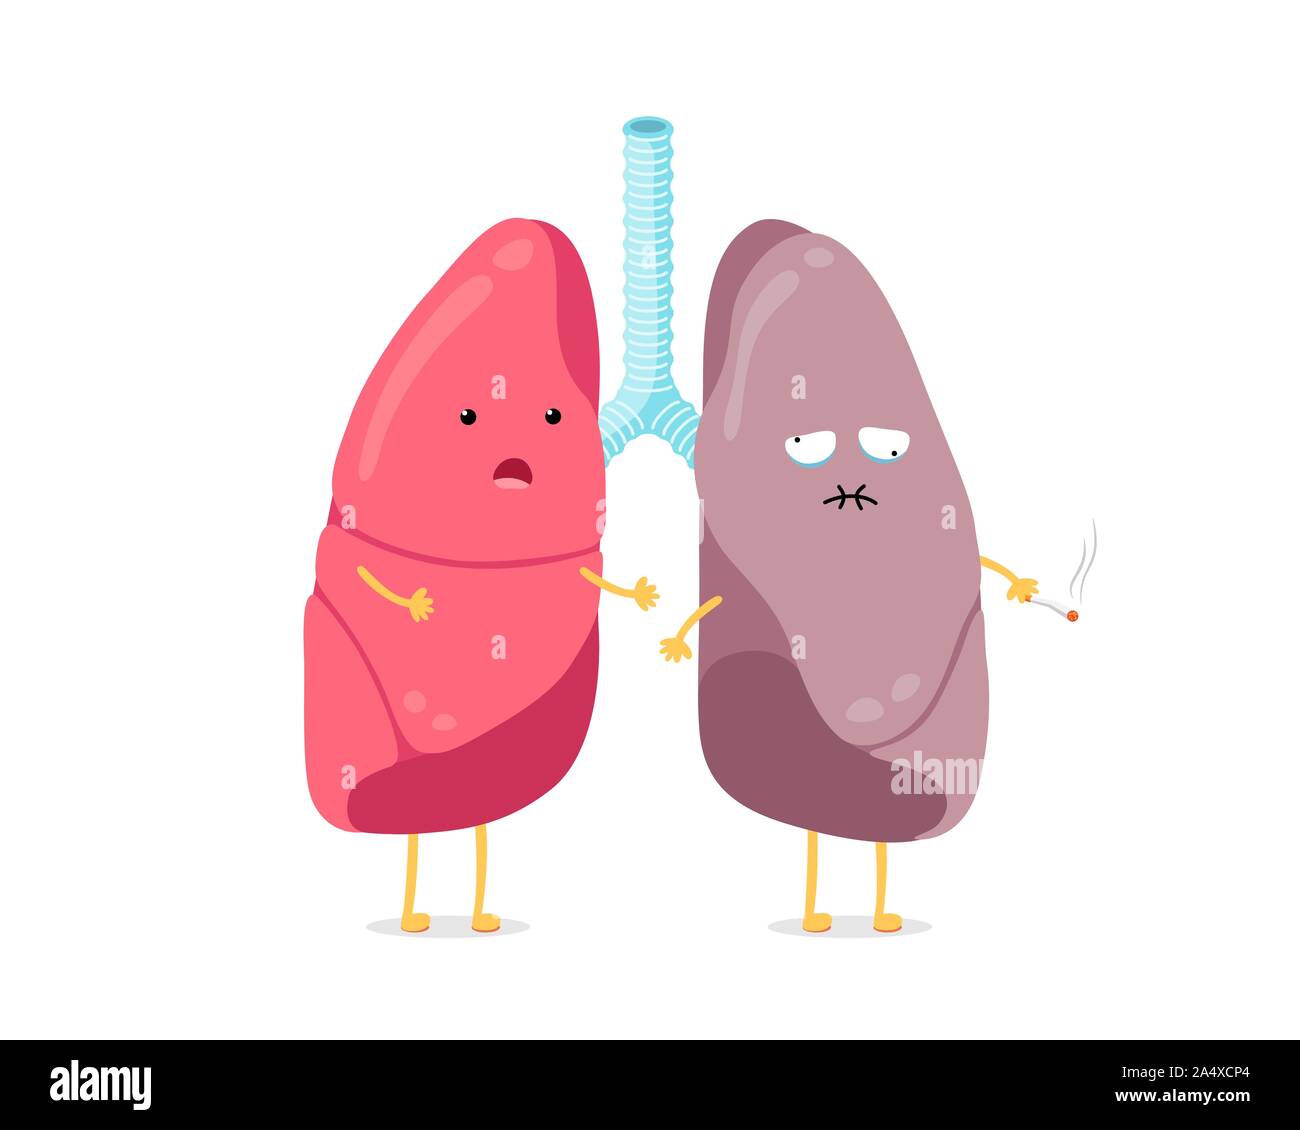 Cute Cartoon lustige Lungen Charakter gesund und Raucher. Stark überrascht und leiden krank Rauchen Lunge Maskottchen. Vergleich der inneren Organe des menschlichen Atmungssystems. Medizinische Anatomie Vektor-Illusrtation Stock Vektor